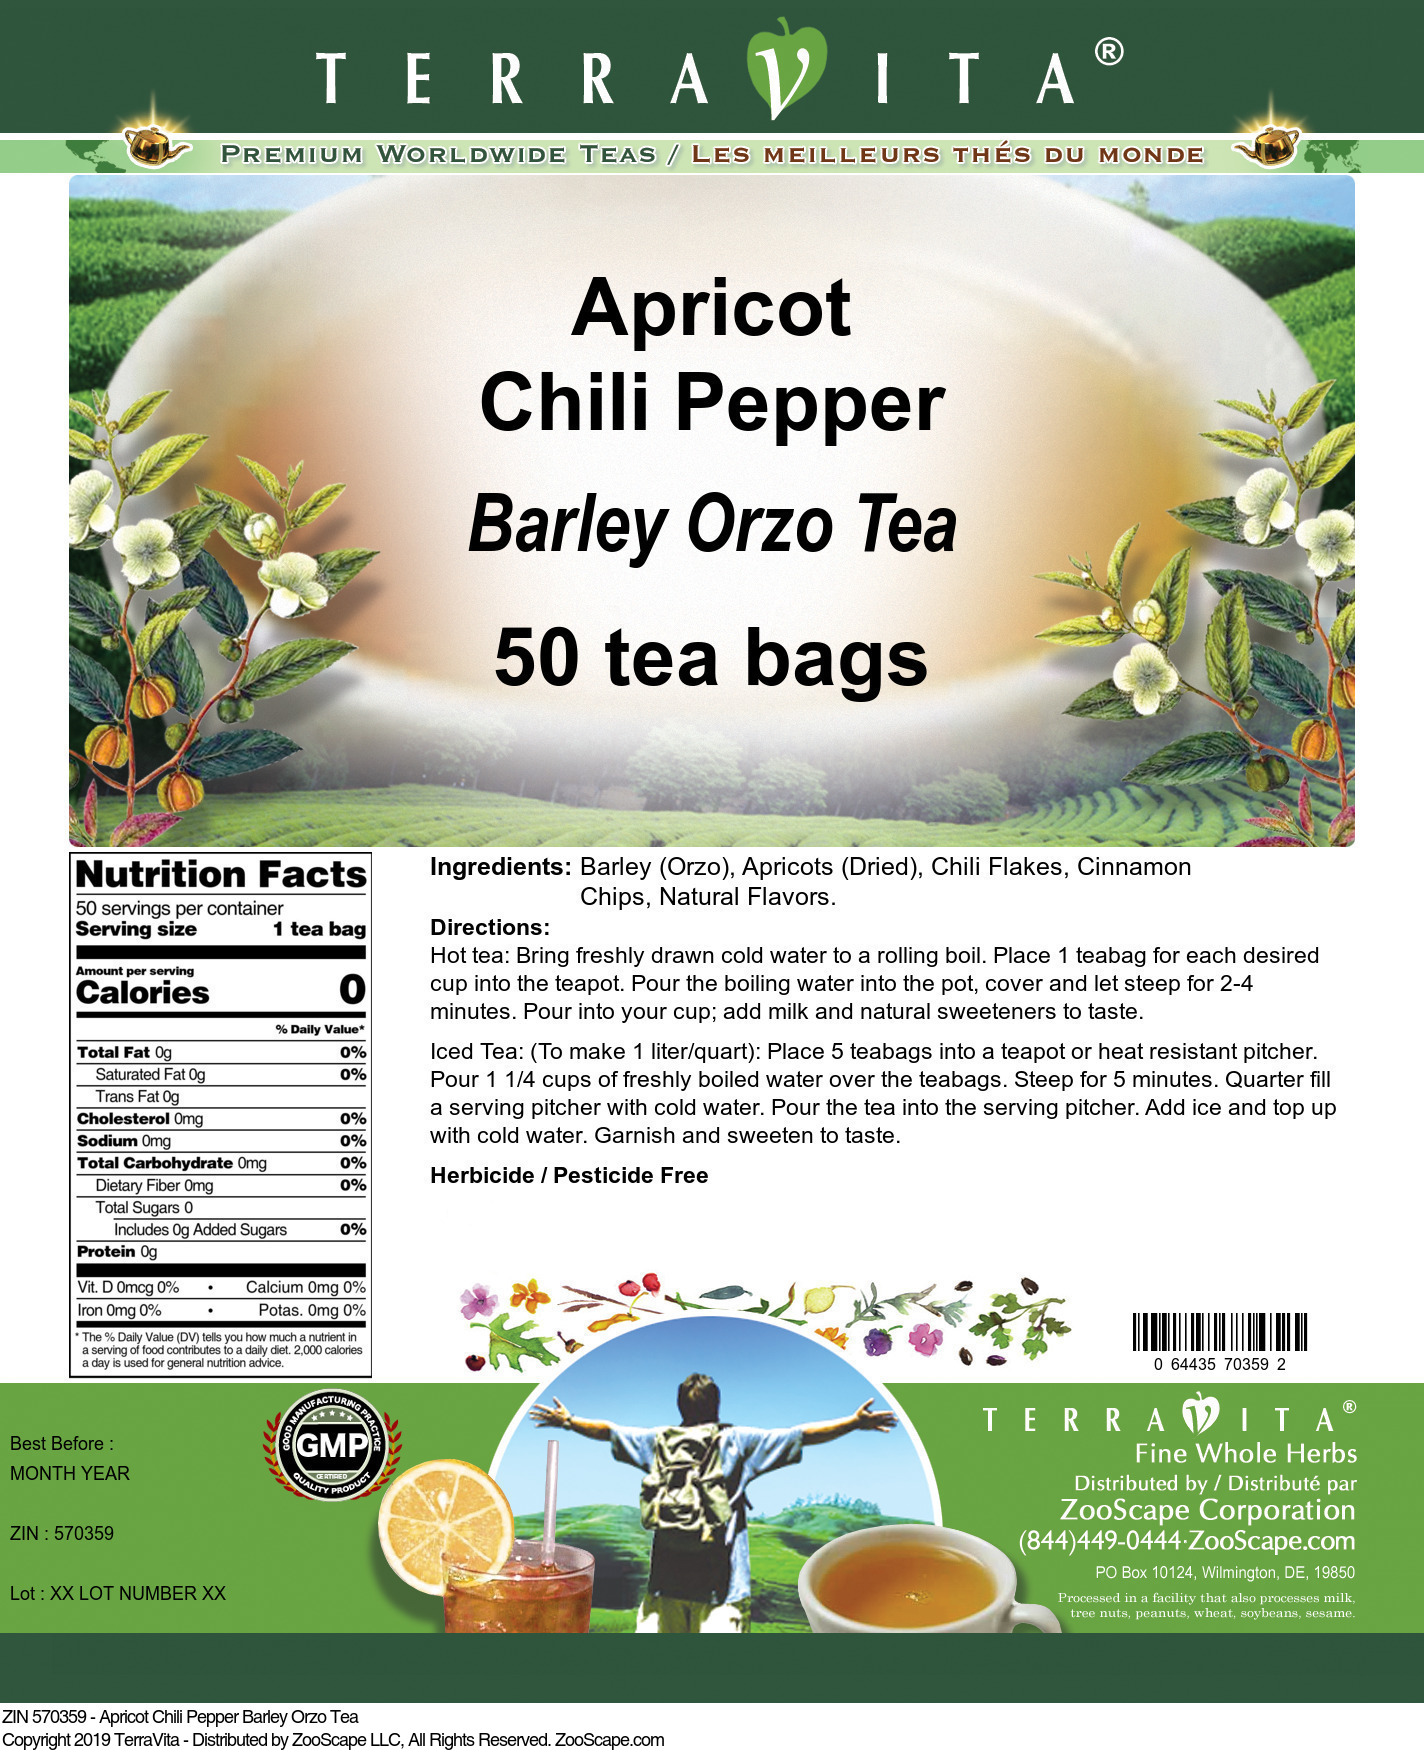 Apricot Chili Pepper Barley Orzo Tea - Label